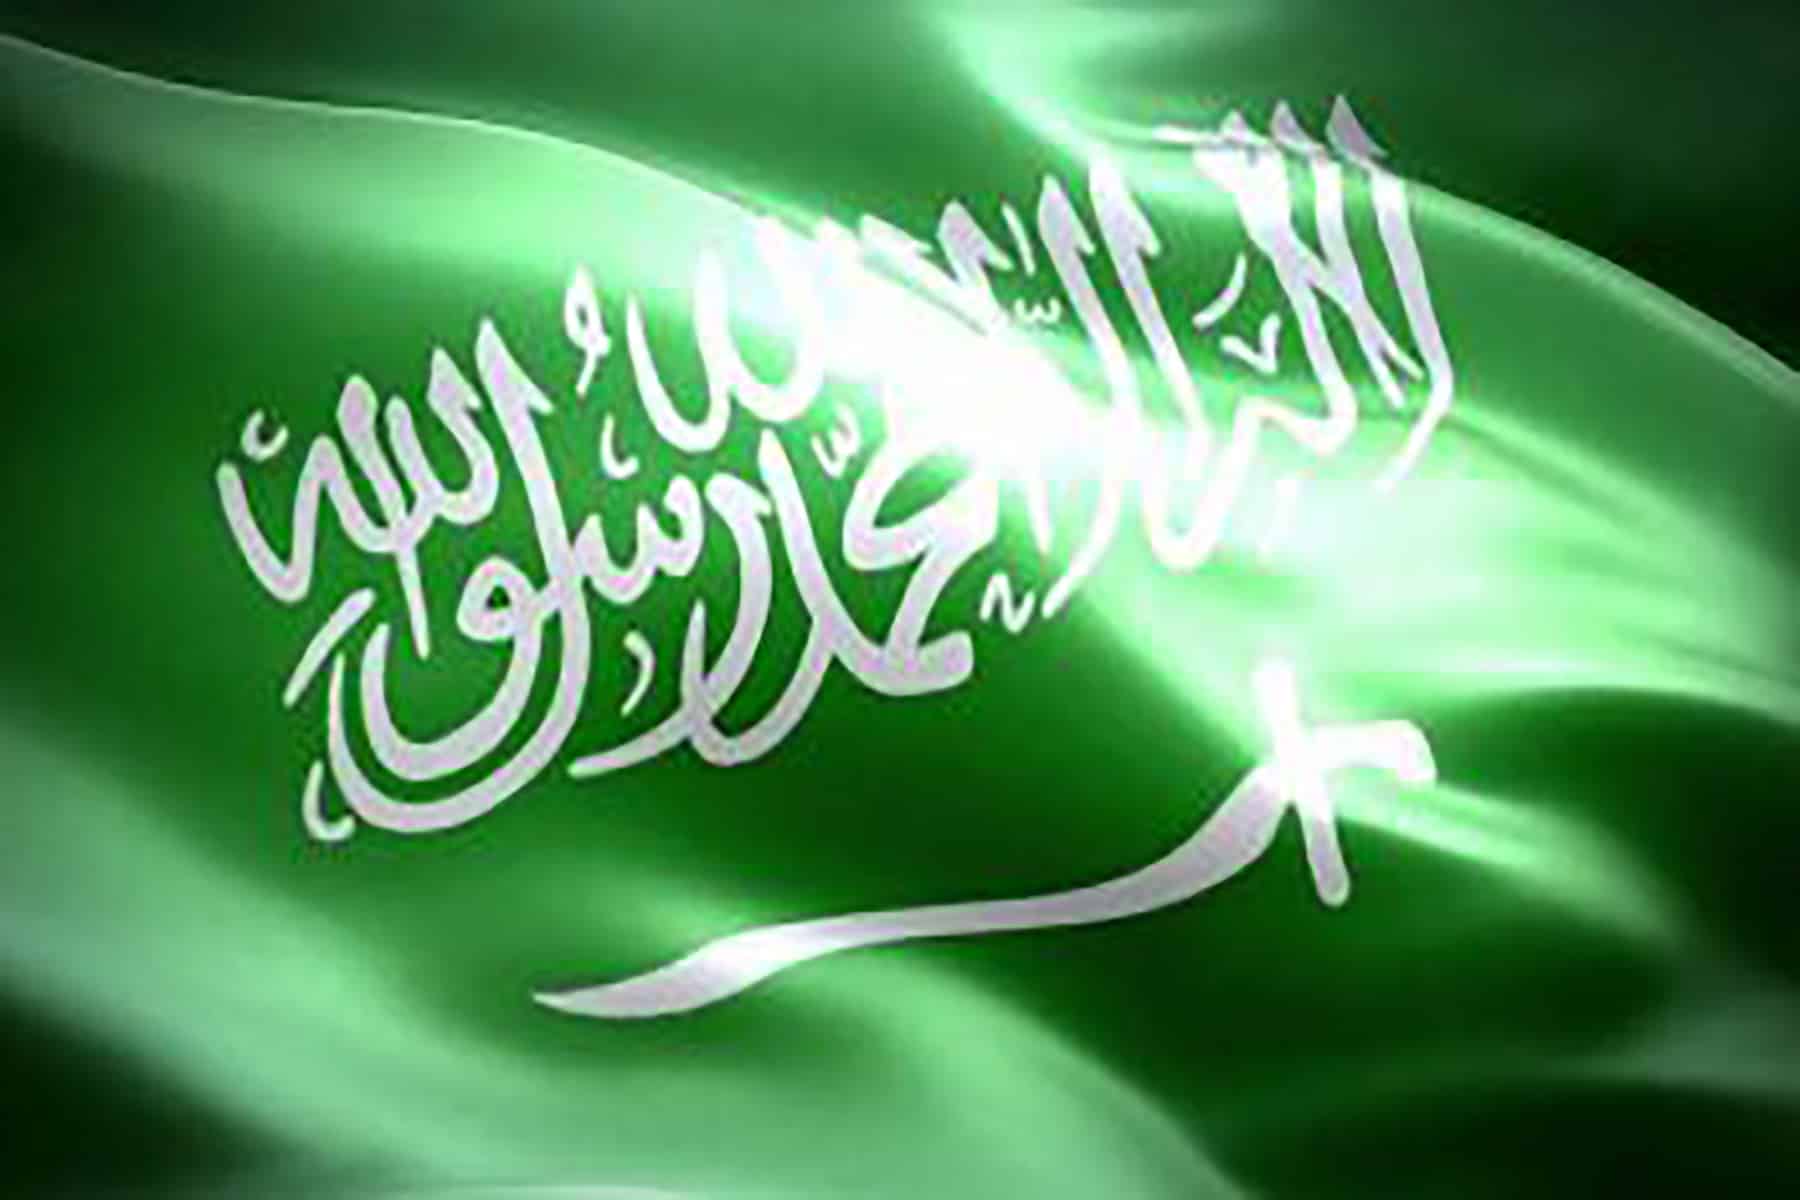 السعودية والنظام السعودي watanserb.com